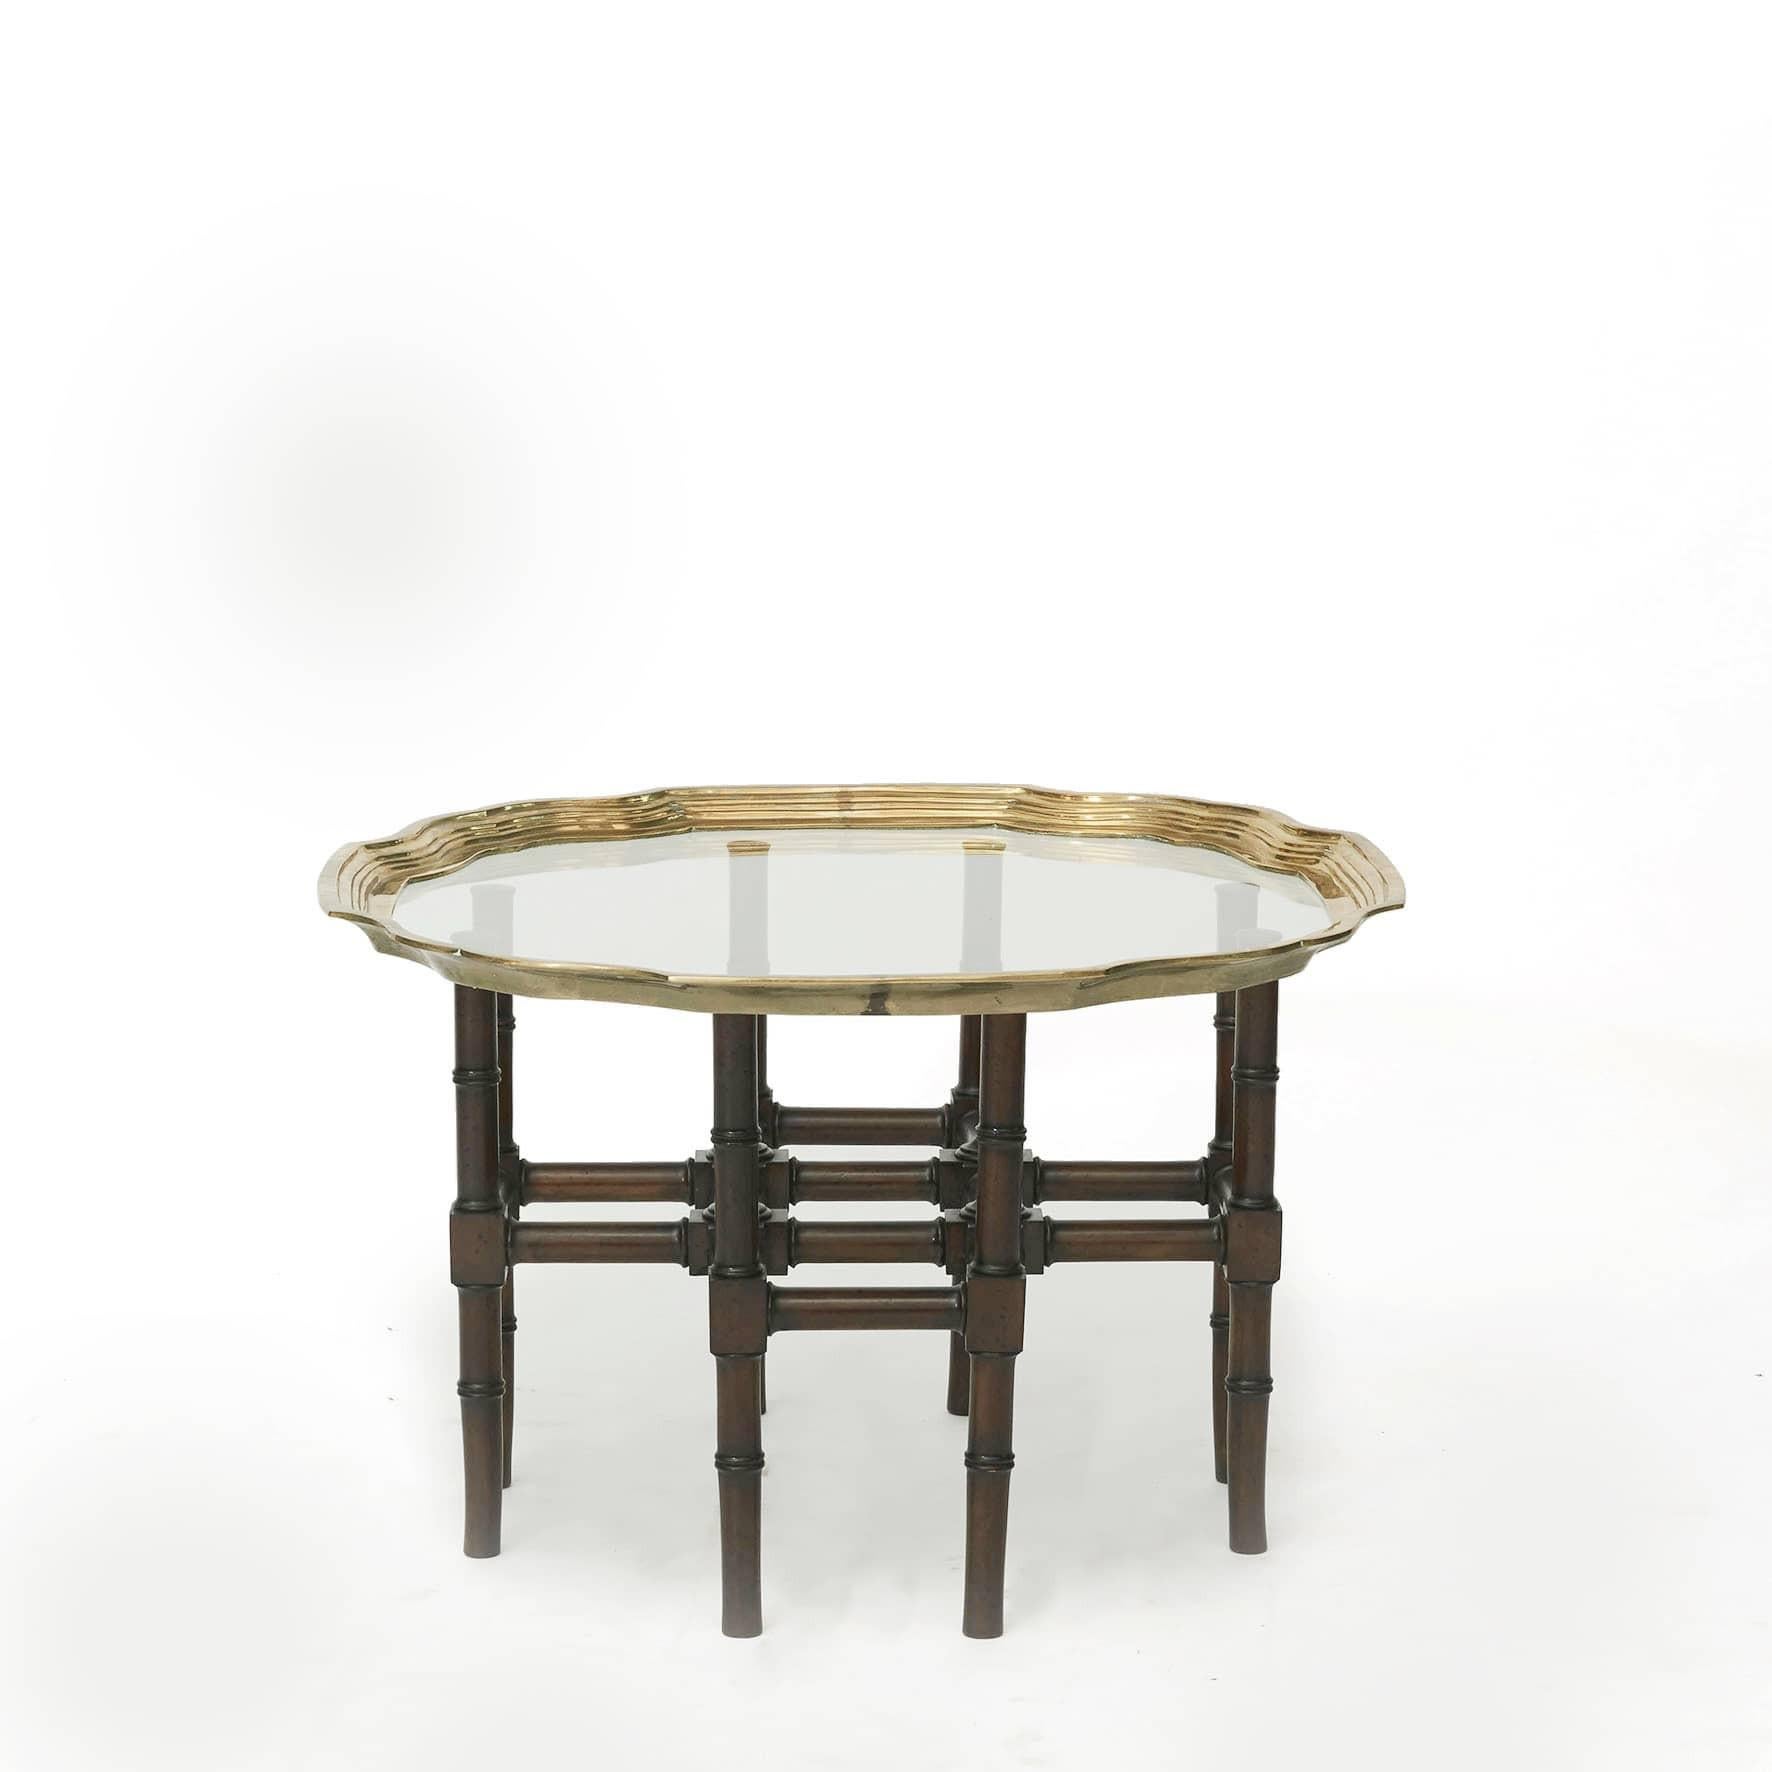 Table basse réalisée avec un plateau en verre et un bord en laiton profilé.
Fond en 